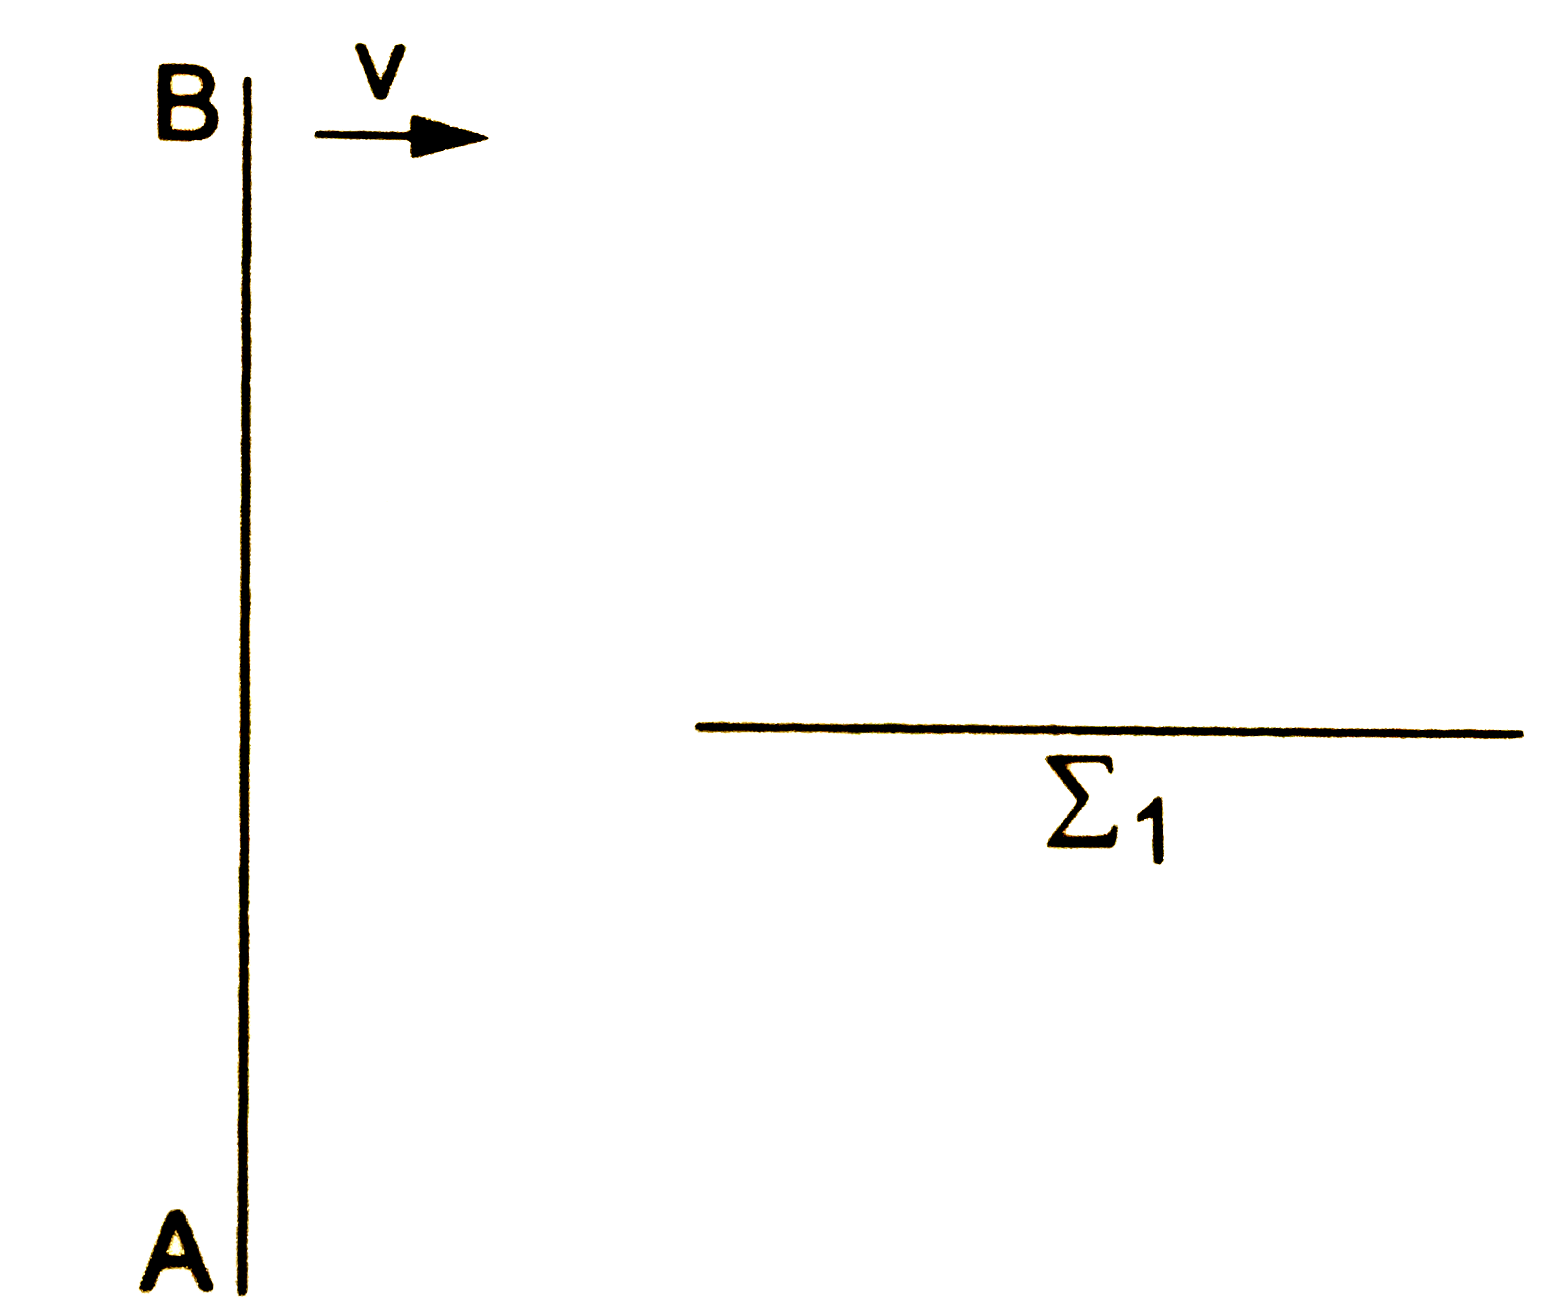 चित्र में एक तरंग दाहिनी ओर v चाल से चलती हुई दिखाई गई है। AB किसी समय इसका एक तरंगाग्र है। Sigma (1 ) एक दुसरी सतह है जो AB पर लंब है। तरंगाग्र AB , समय t = 0 पर Sigma (1 ) के बाएँ किनारे पर पहुँचता है। समय t = t (0 ) पर AB तरंगाग्र की नई स्थिति क्या होगी ?